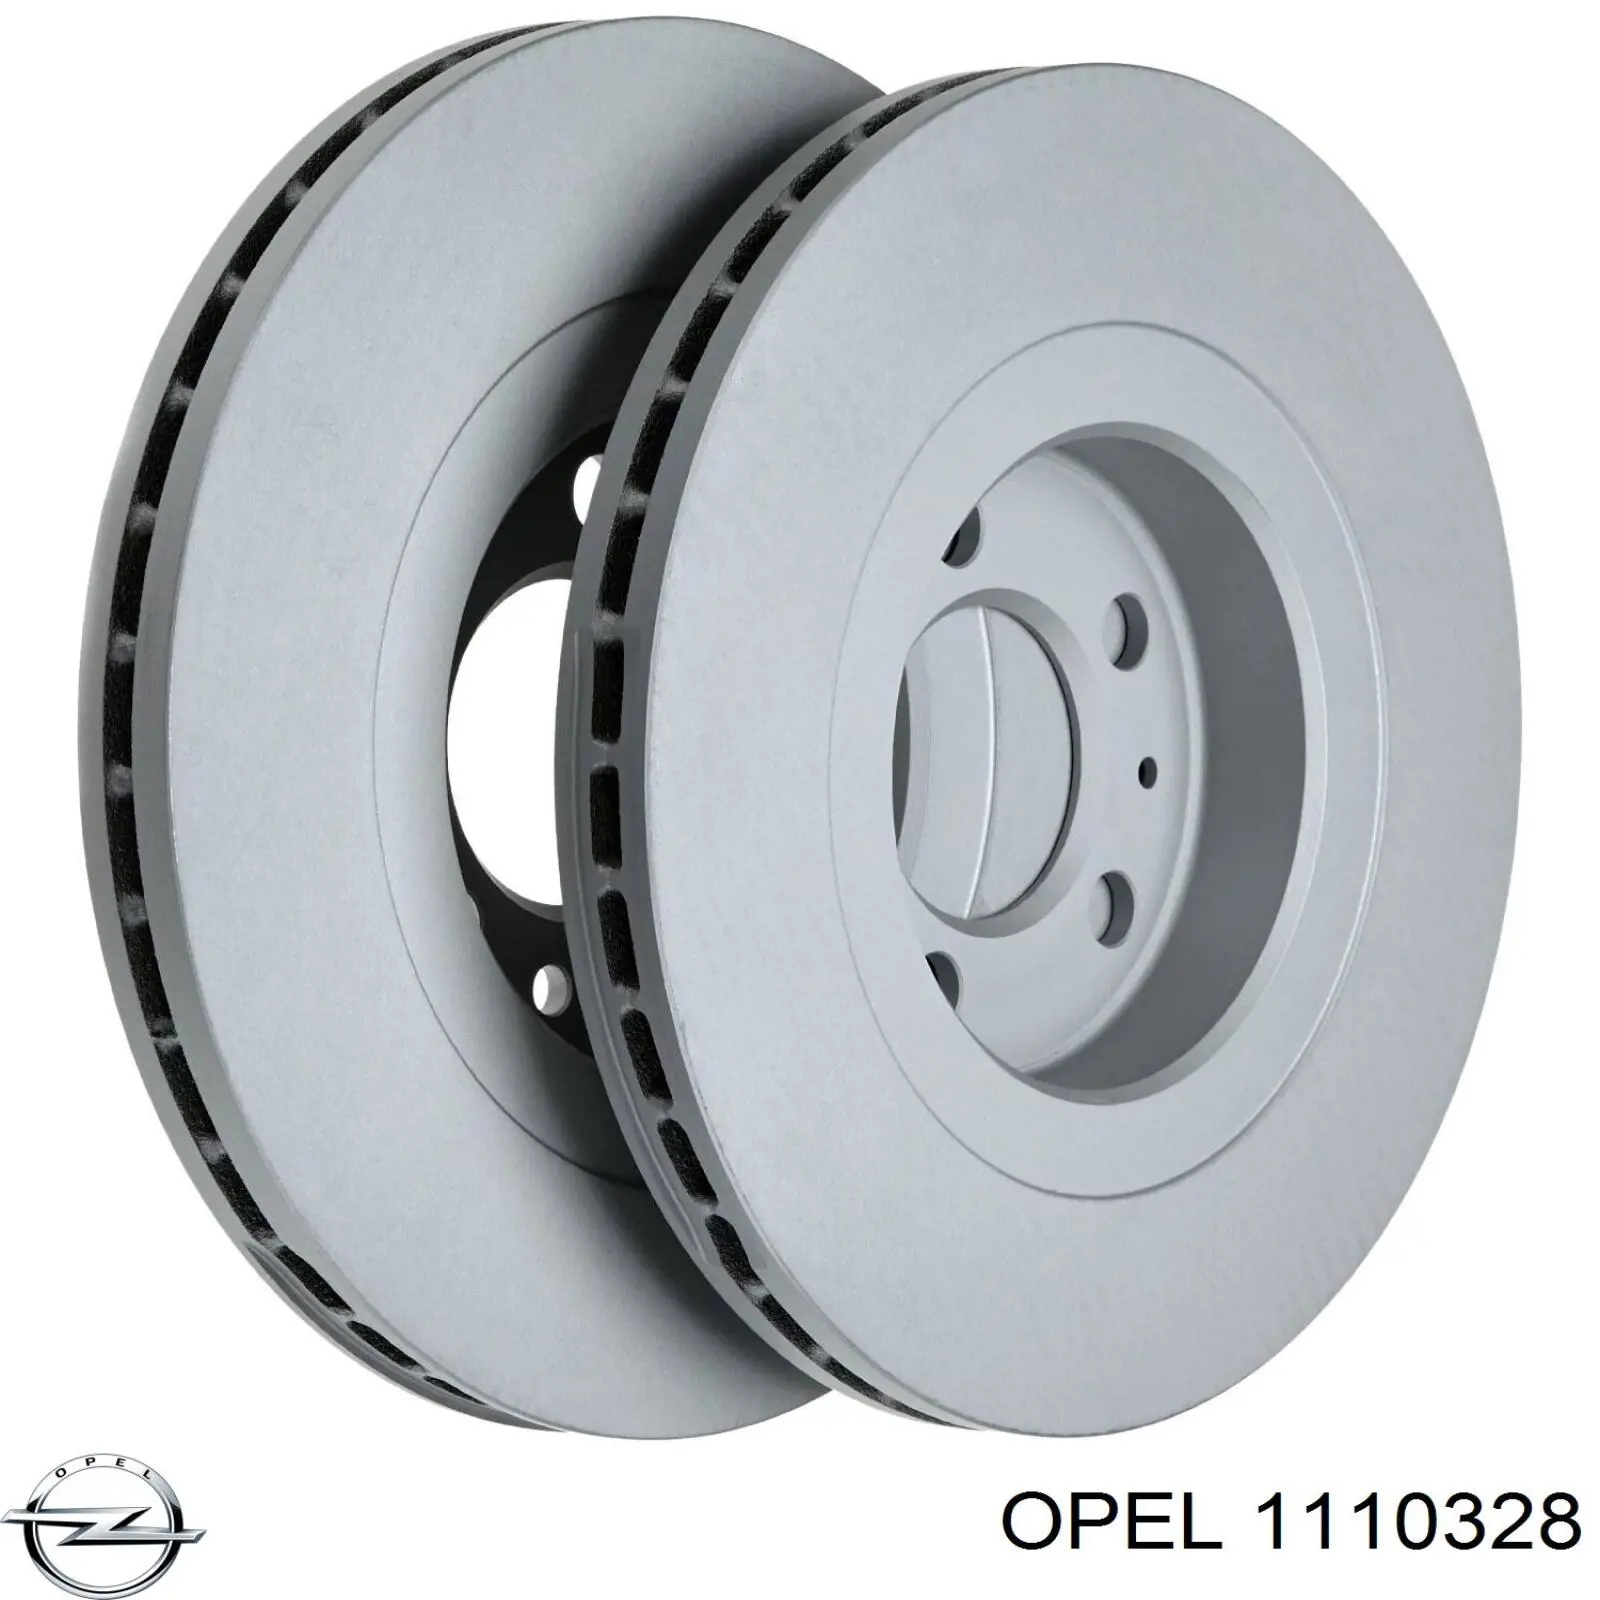 1110328 Opel суппорт радиатора правый (монтажная панель крепления фар)